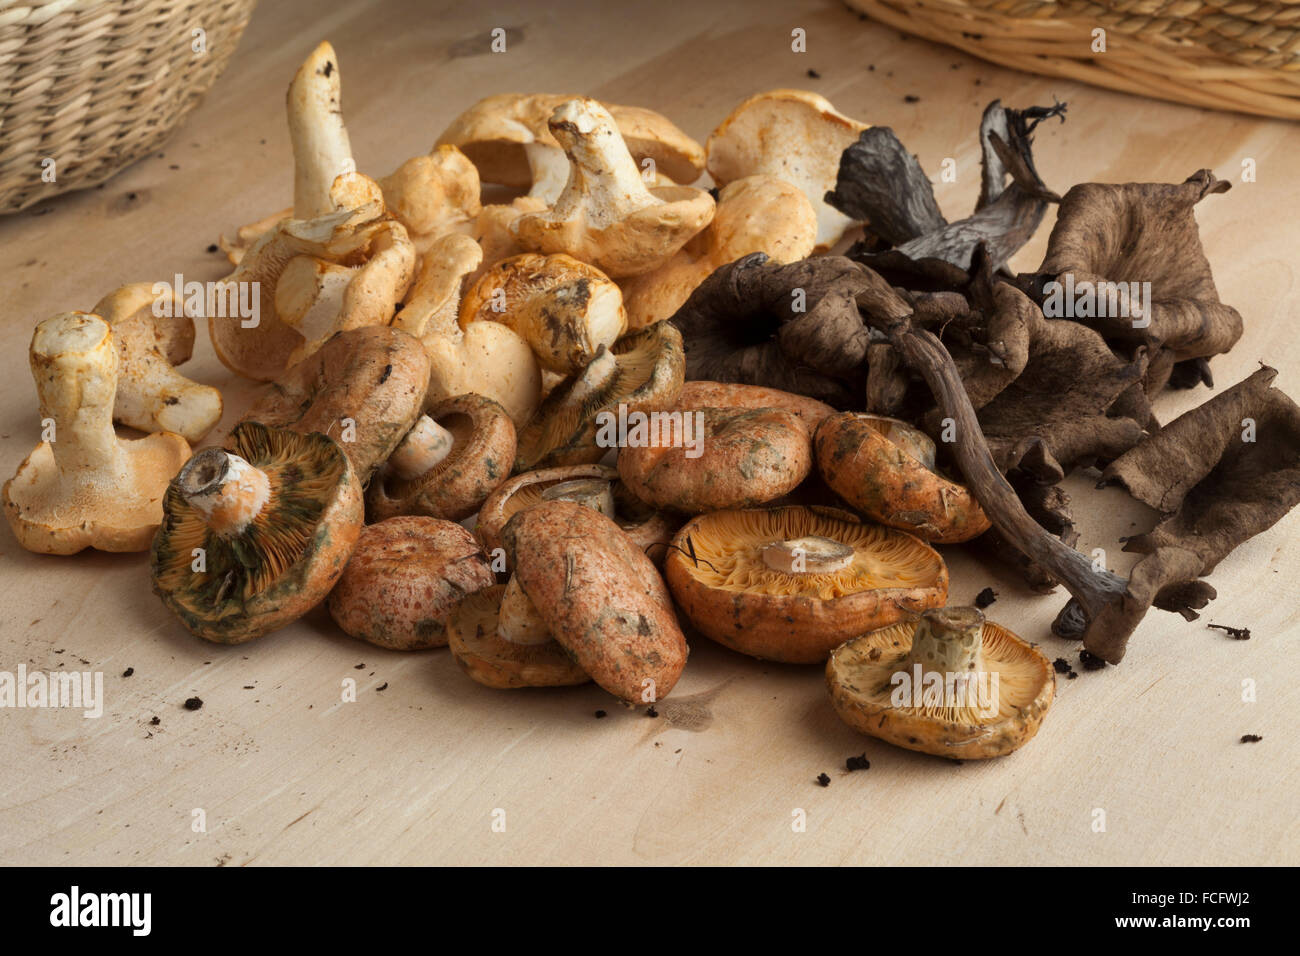 Variety of fresh picked wild mushrooms Stock Photo